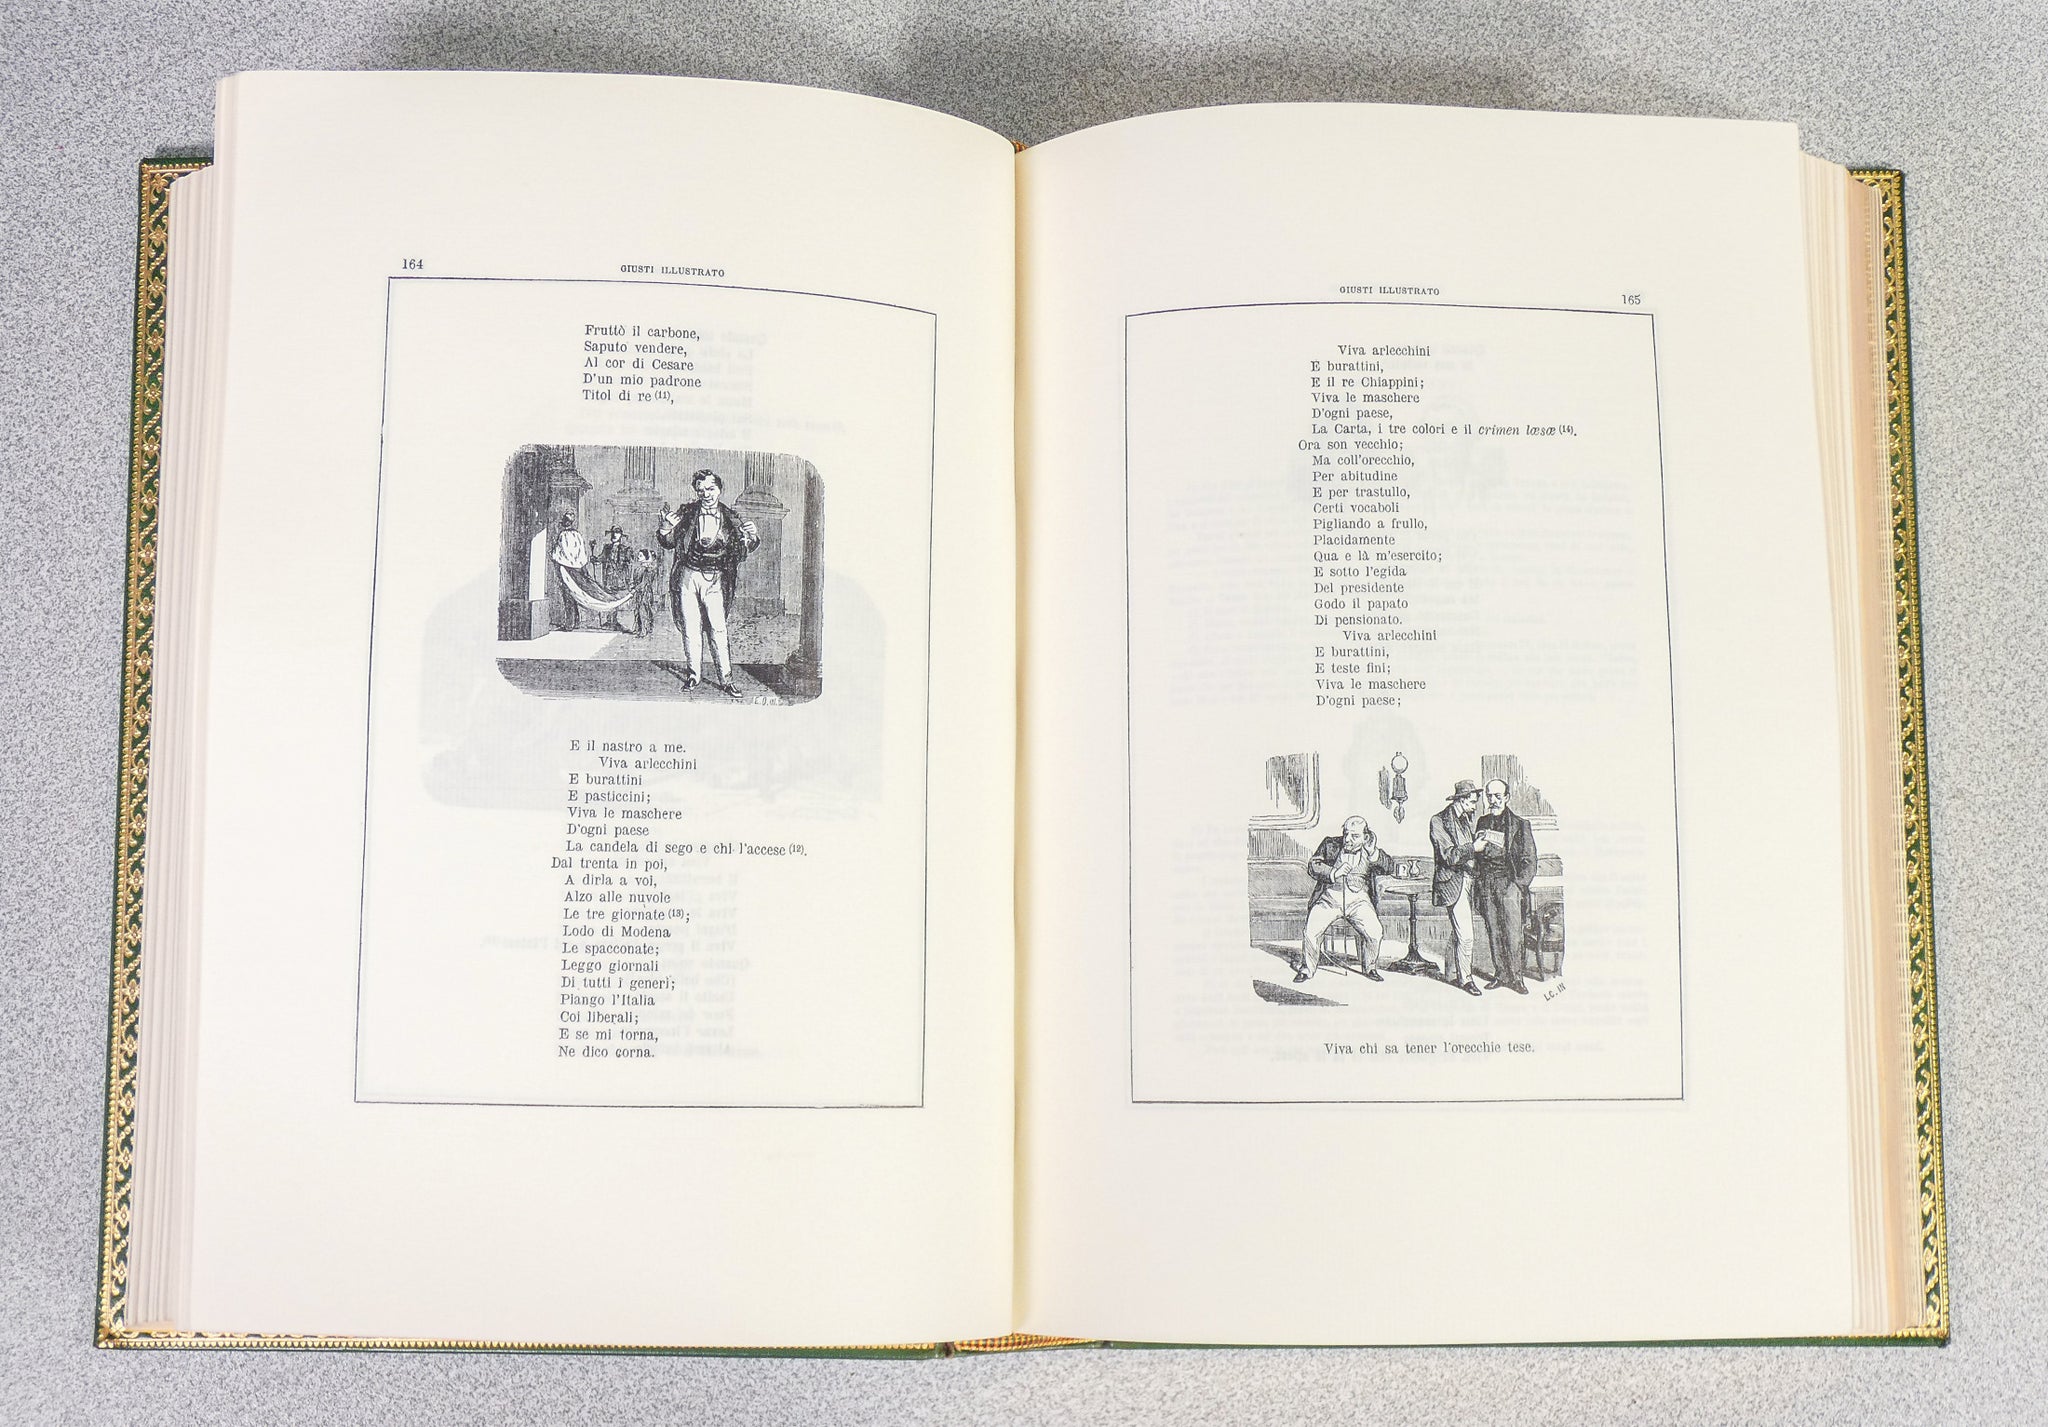 libro poesie giuseppe giusti illustrato matarelli 1887 riproduzione 1969 nei